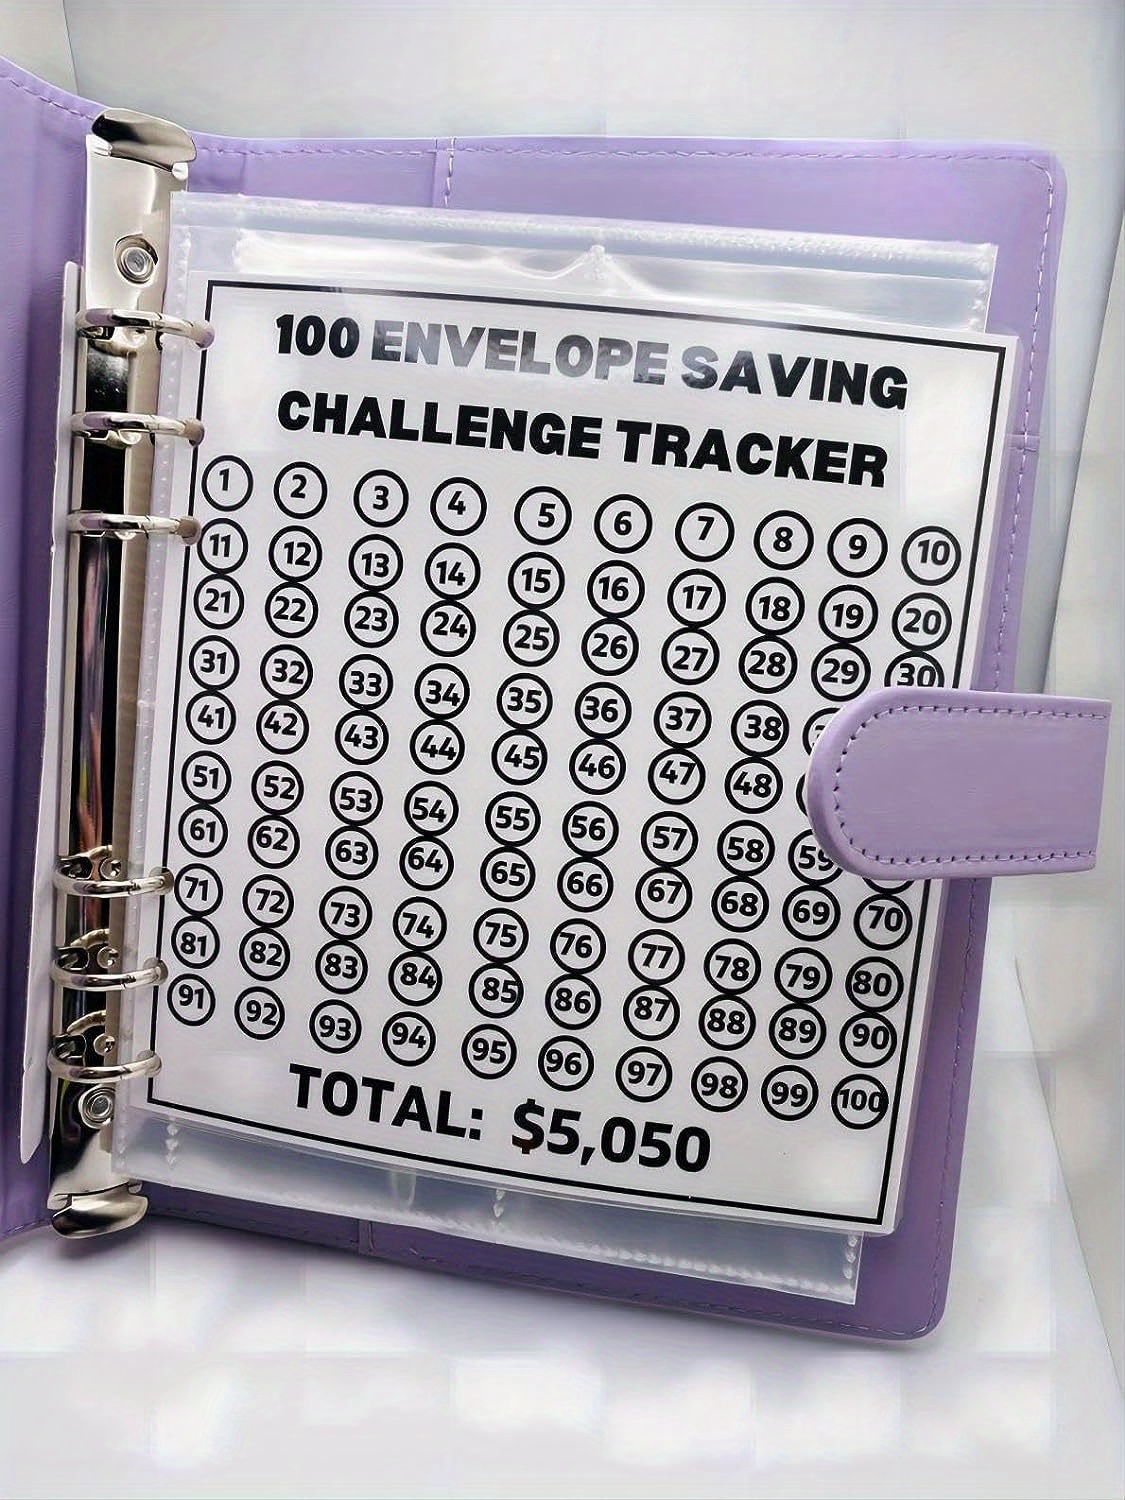 Carpeta de desafío de 100 sobres | Carpeta de ahorro A5 con sobres de  efectivo | Carpeta de presupuesto para planificar y ahorrar $5050 con  hebilla